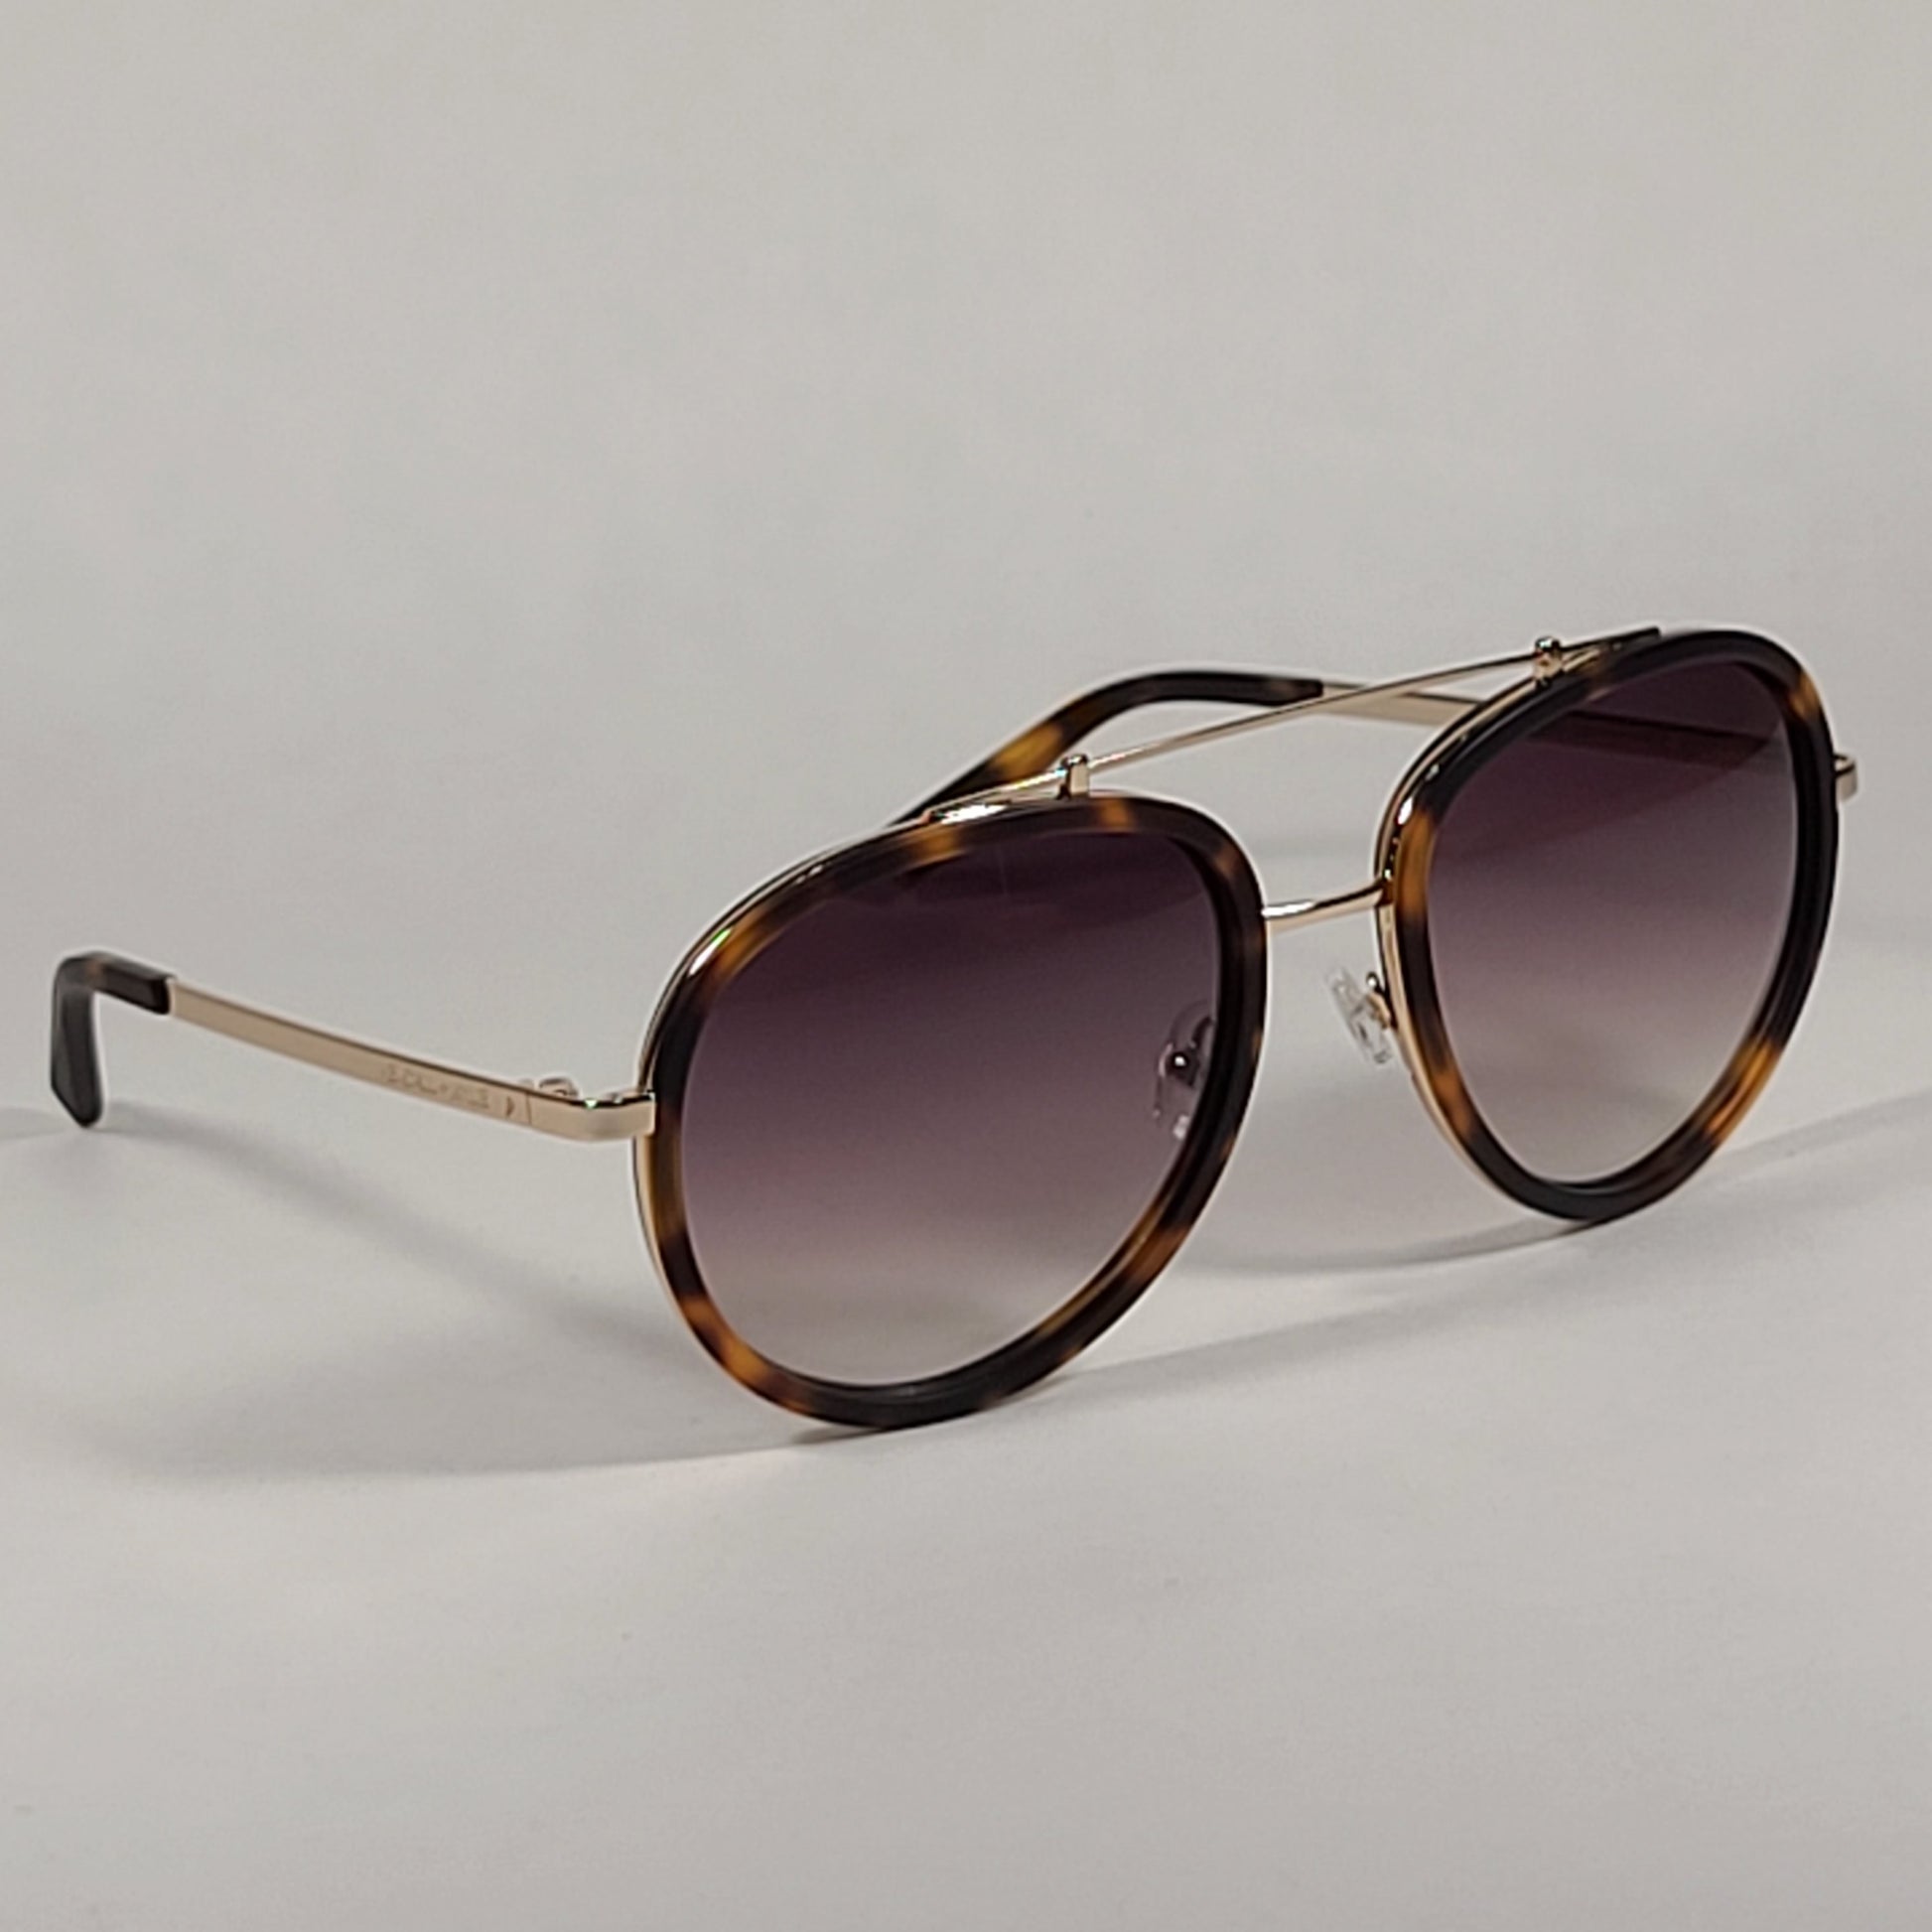 Kendall + Kylie Jules Aviator Sunglasses Matte Demi Tortoise and Gold Frame Brown Gradient Lens KK5005Q 215 - Sunglasses